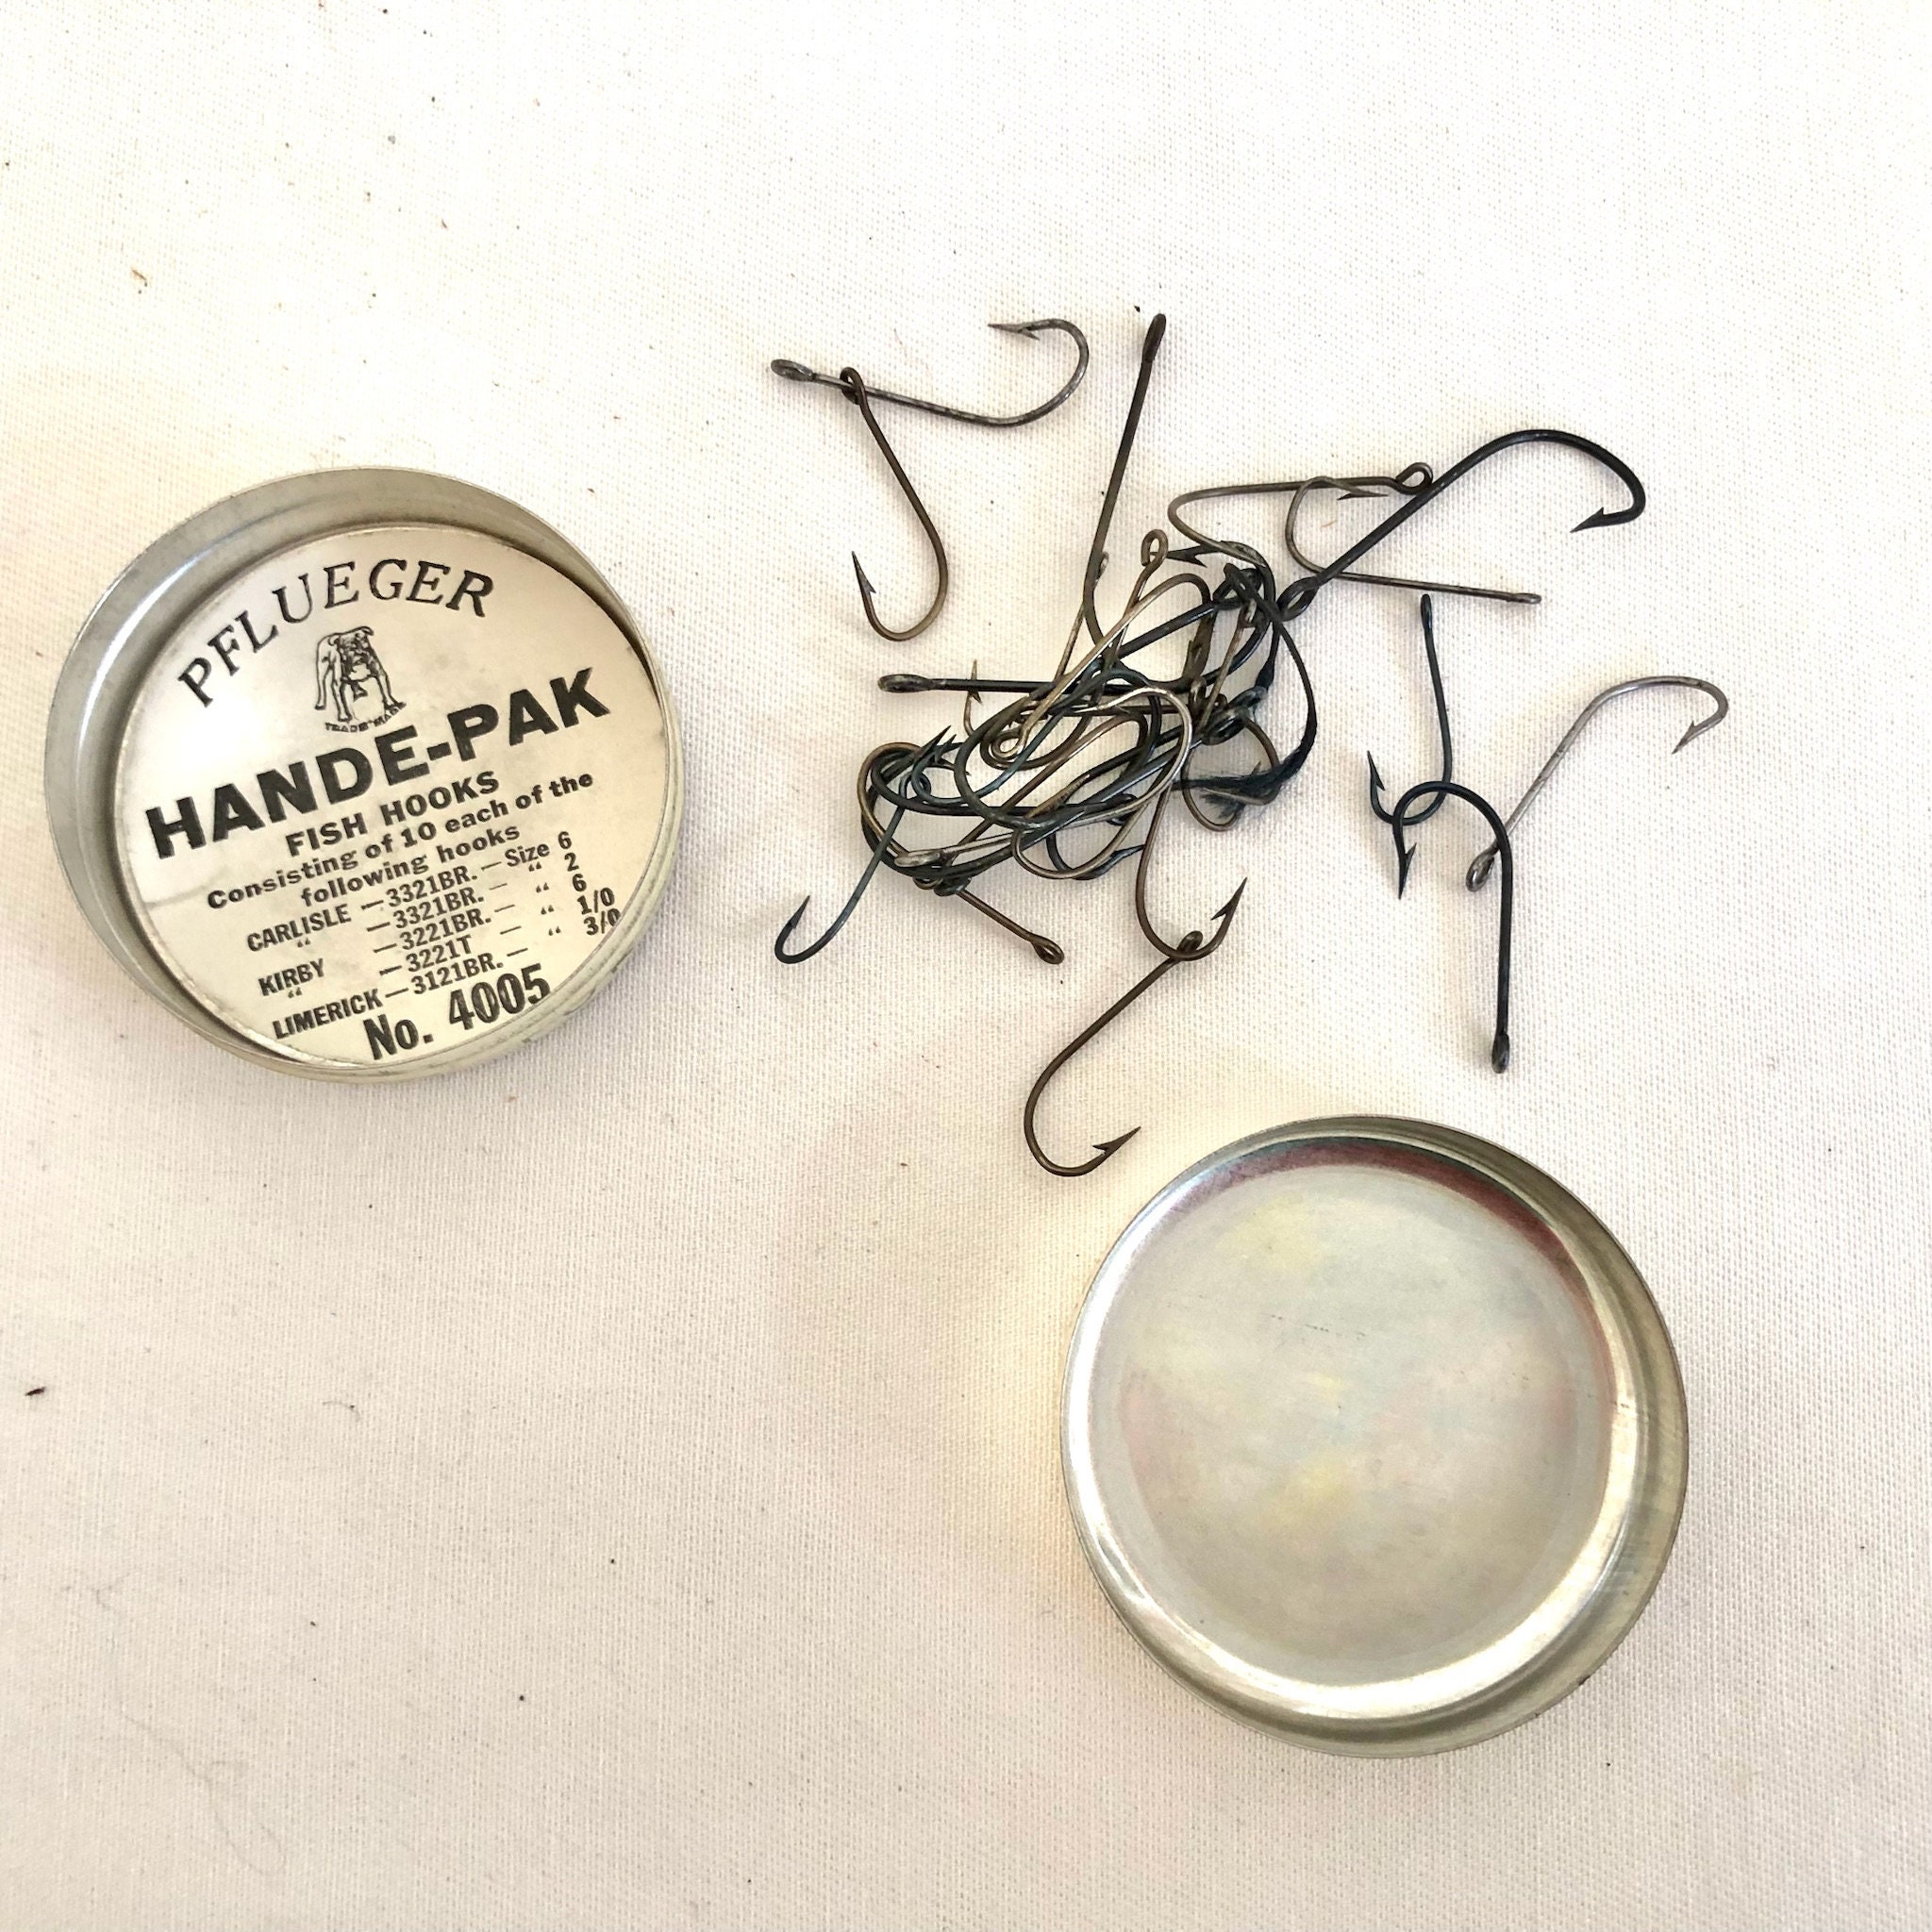 Vintage Pflueger Hande-pak Fish Hooks Tin Fishing Hook Collectible 